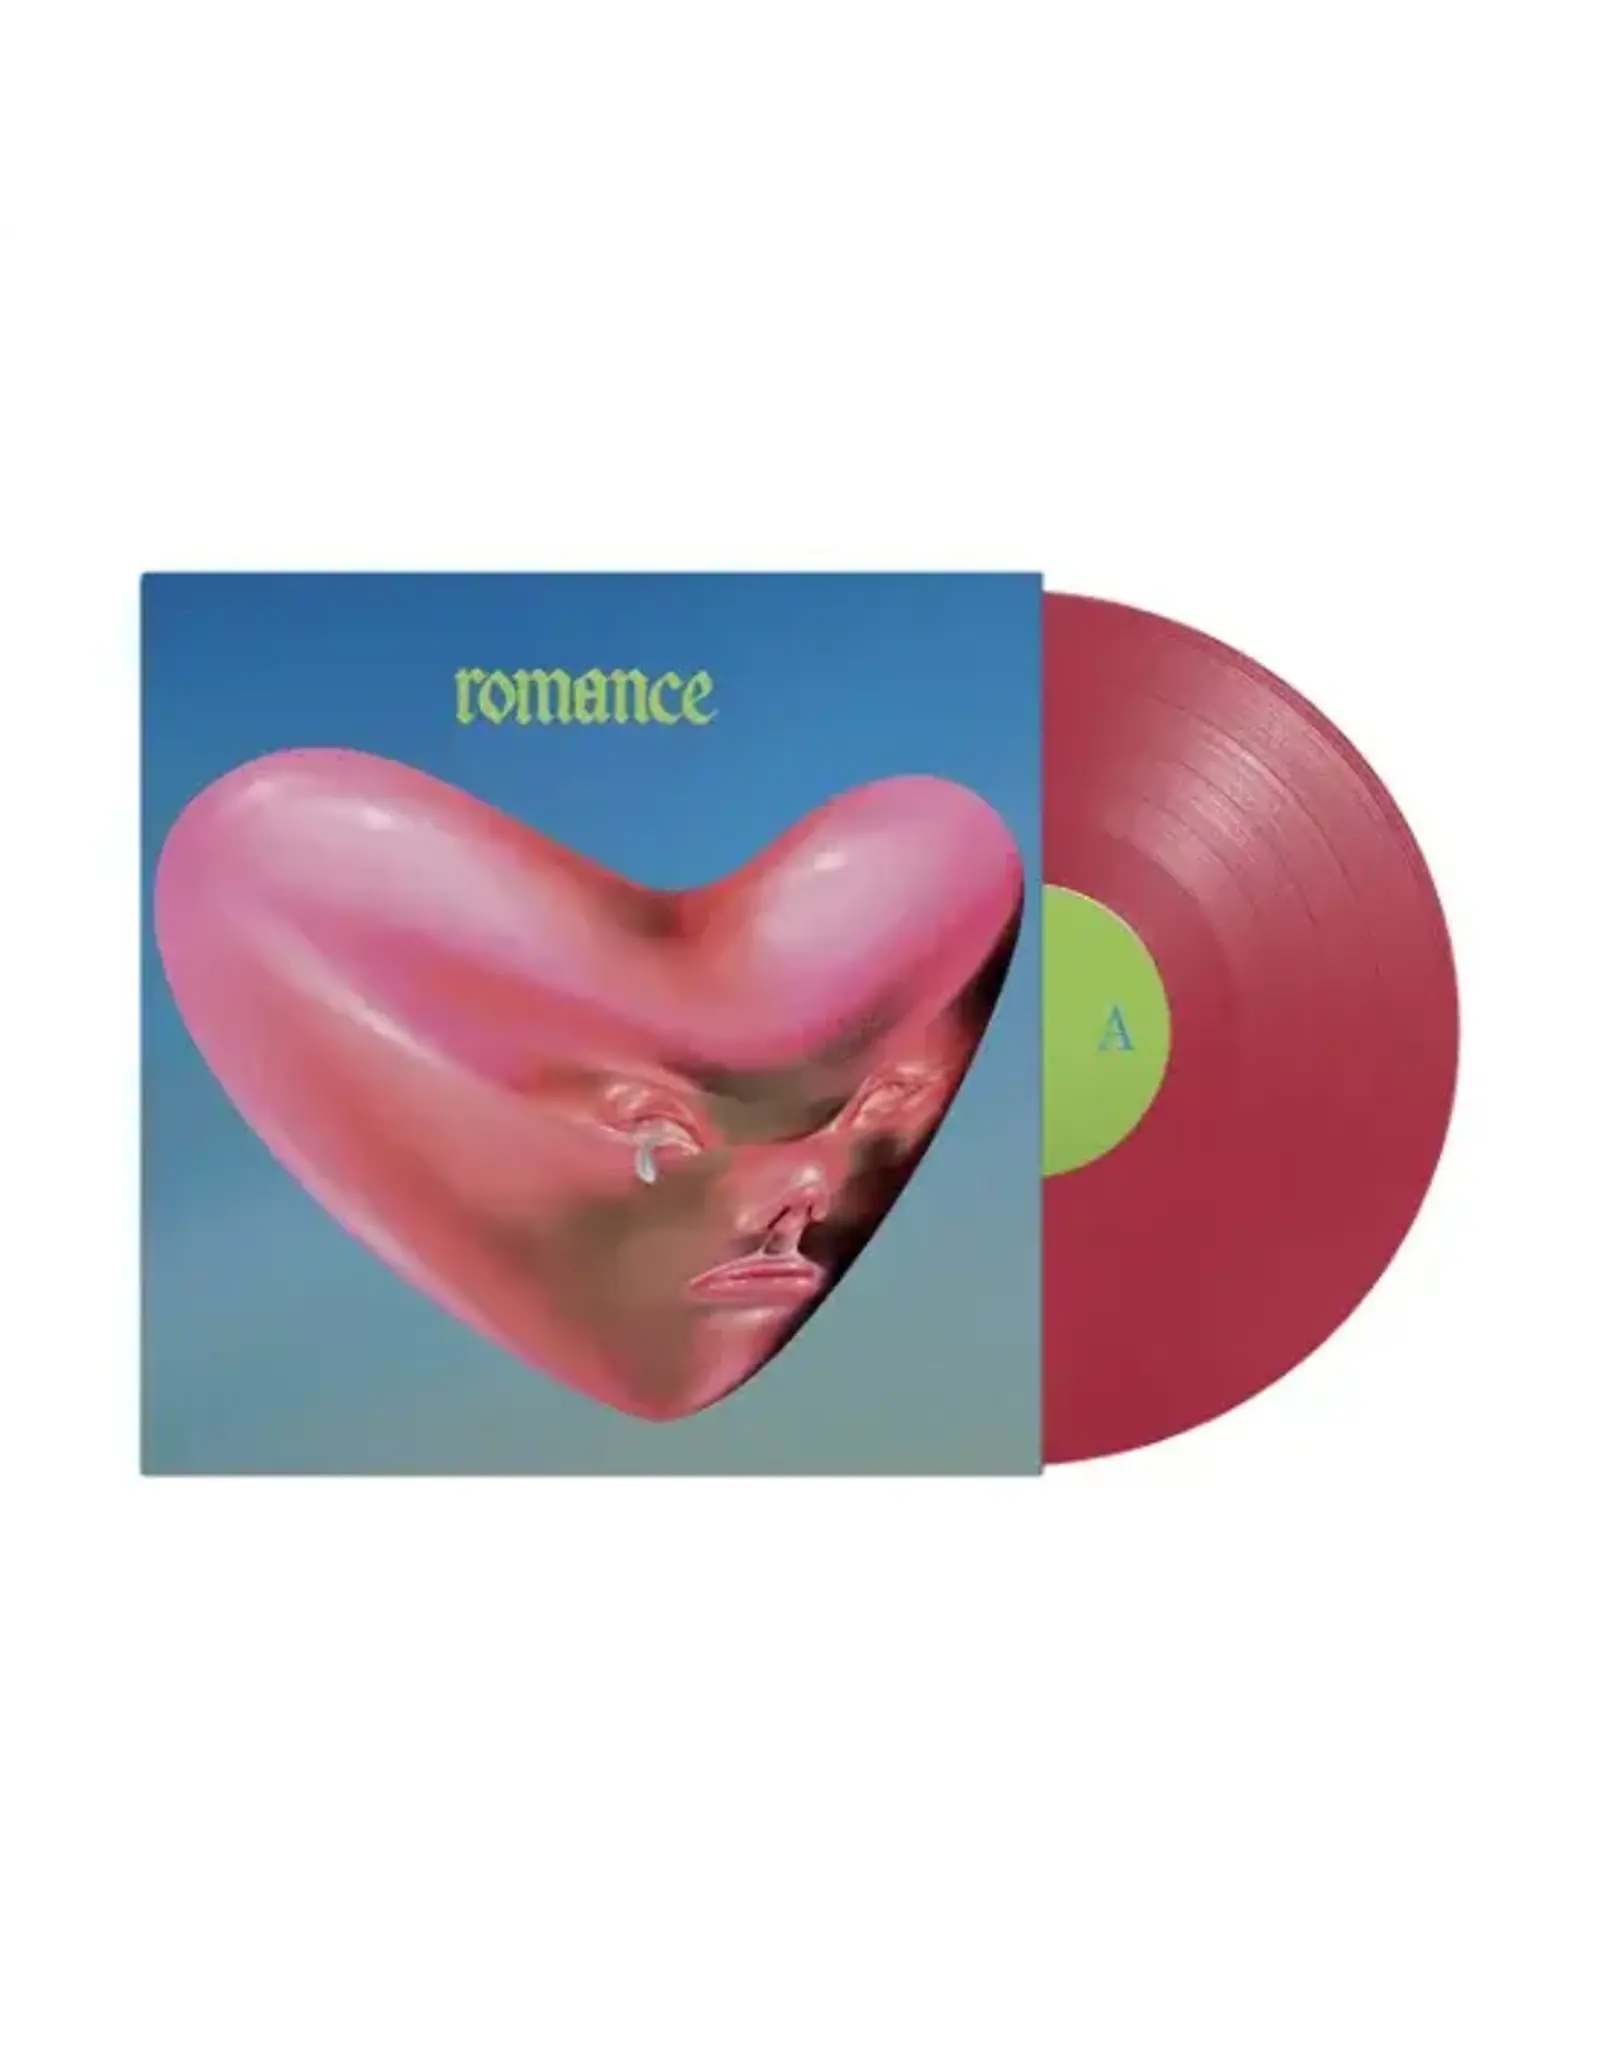 Fontaines D.C. - Romance (Exclusive Pink Vinyl)